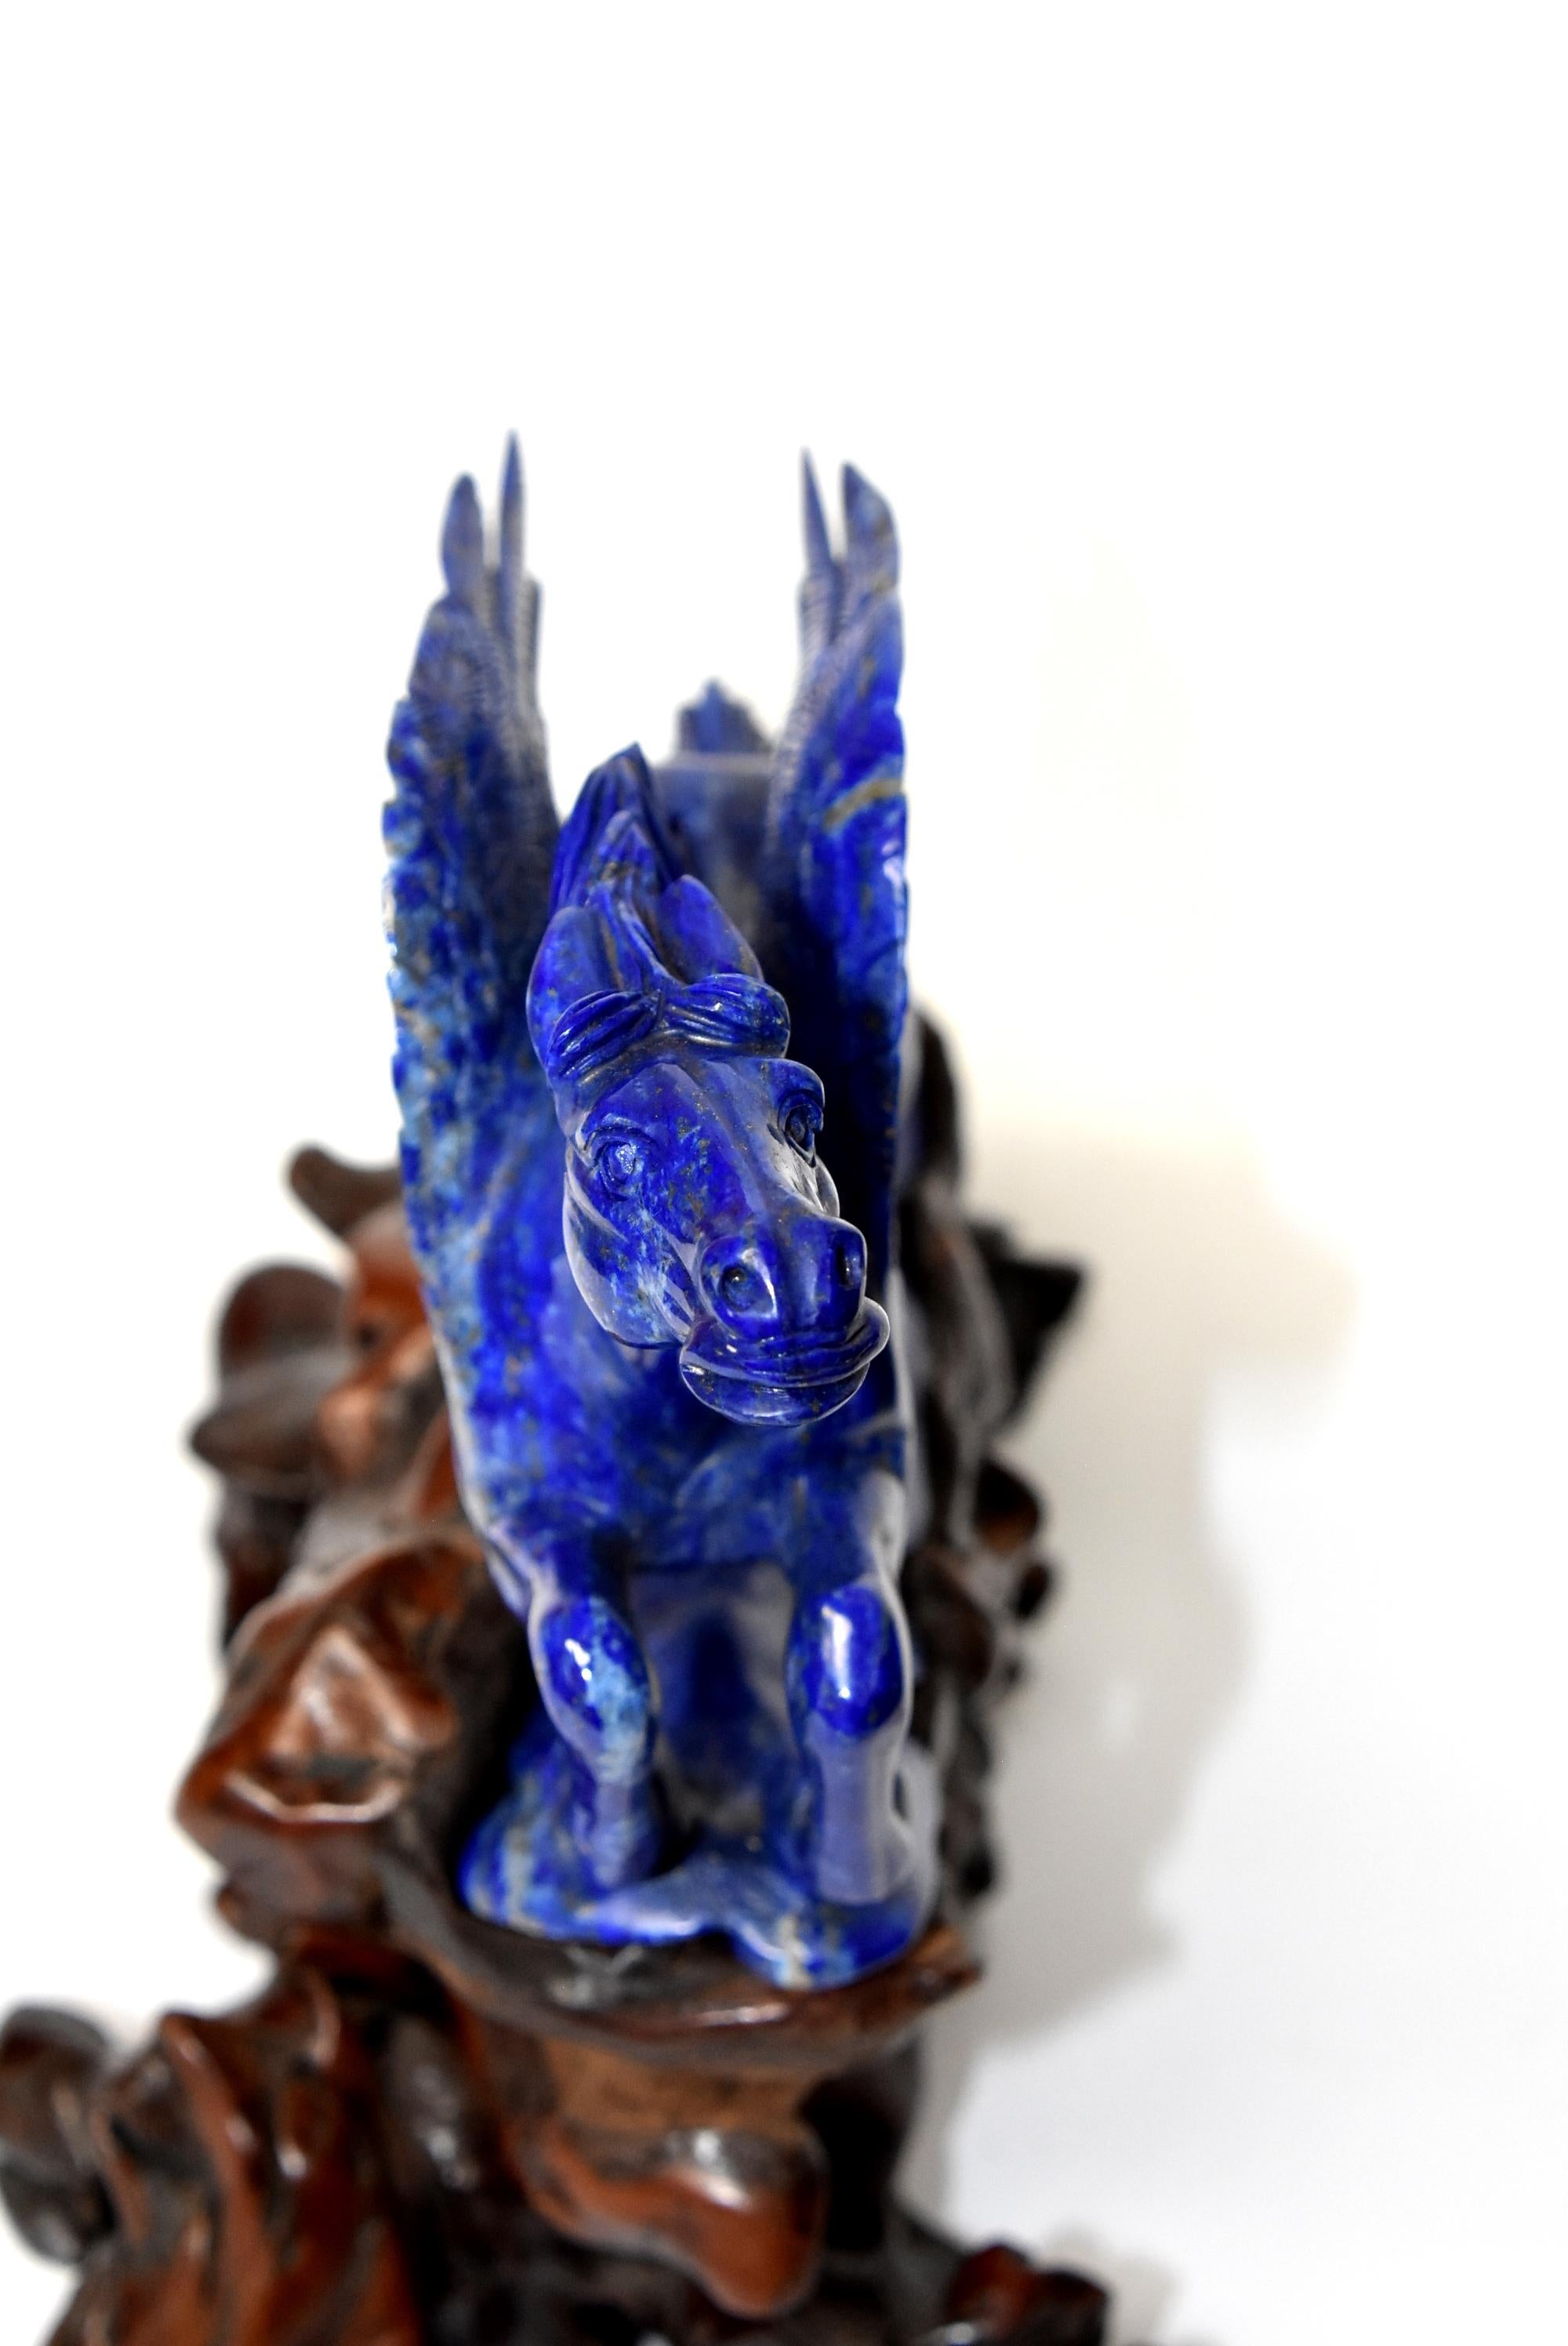 Lapis Lazuli Statue, 4.5 Lb Pegasus Sculpture by Known Artist 3